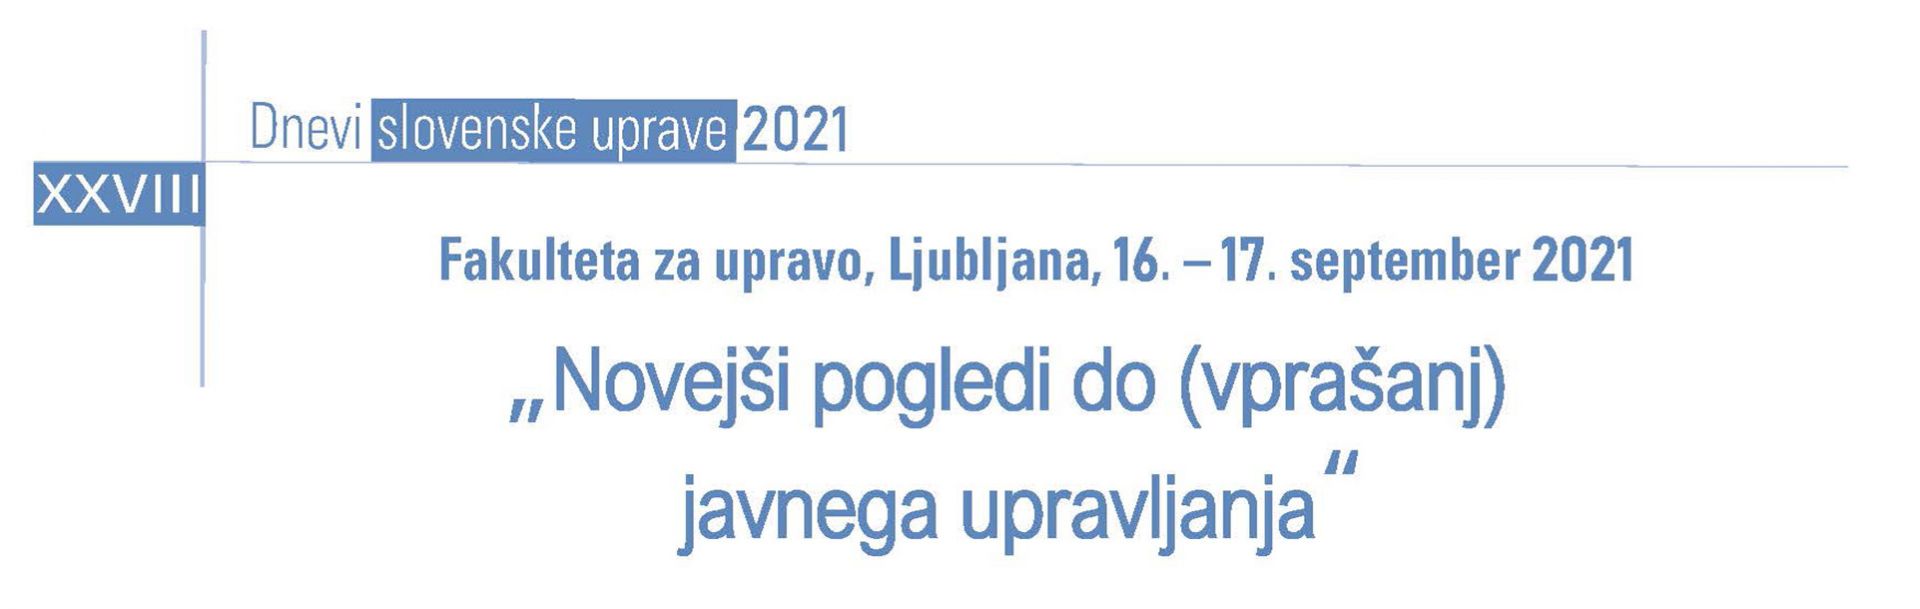 XXVIII. Dnevi slovenske uprave